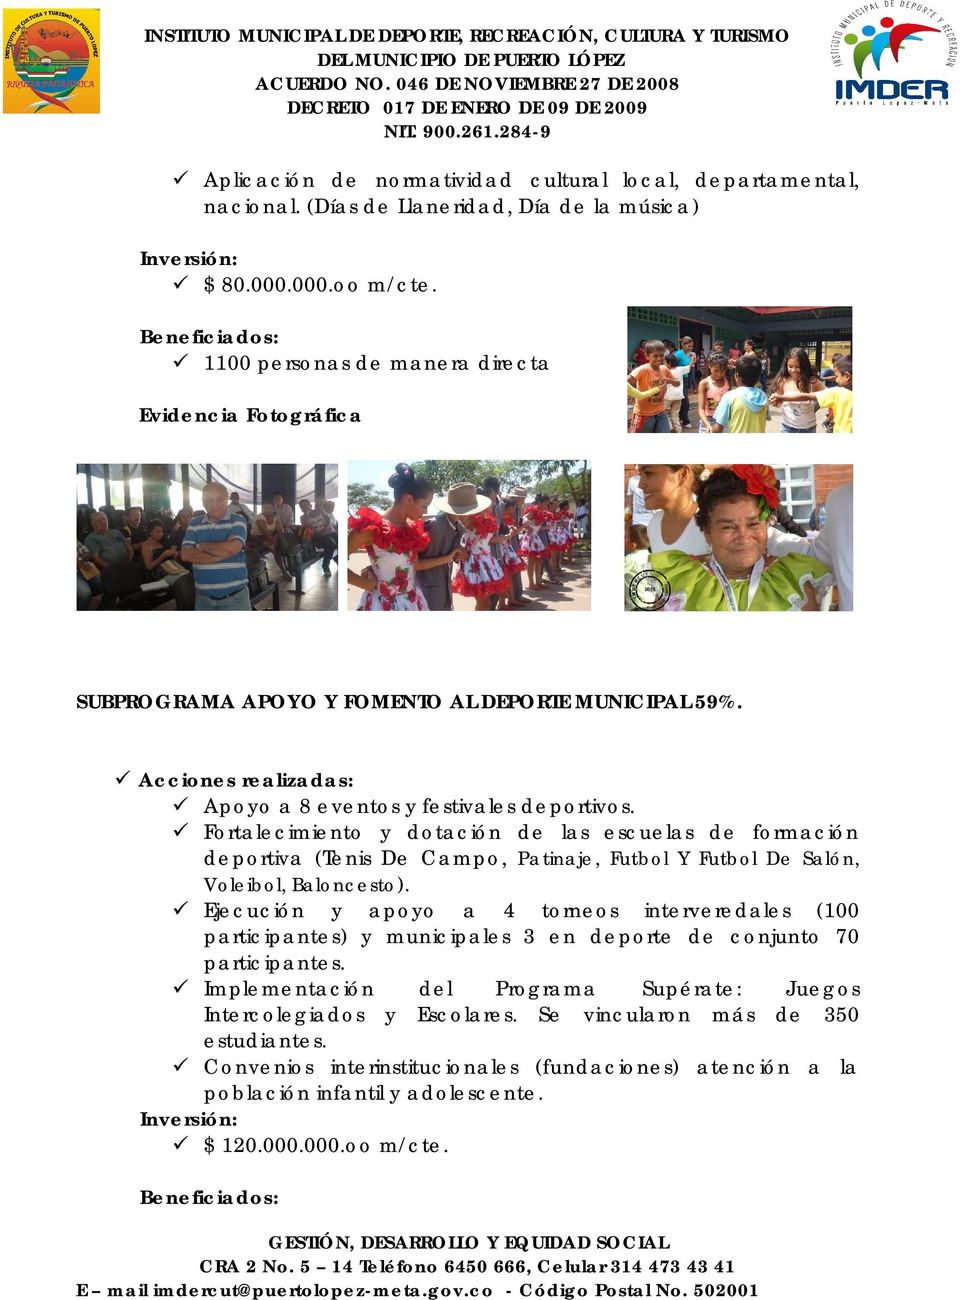 Fortalecimiento y dotación de las escuelas de formación deportiva (Tenis De Campo, Patinaje, Futbol Y Futbol De Salón, Voleibol, Baloncesto).